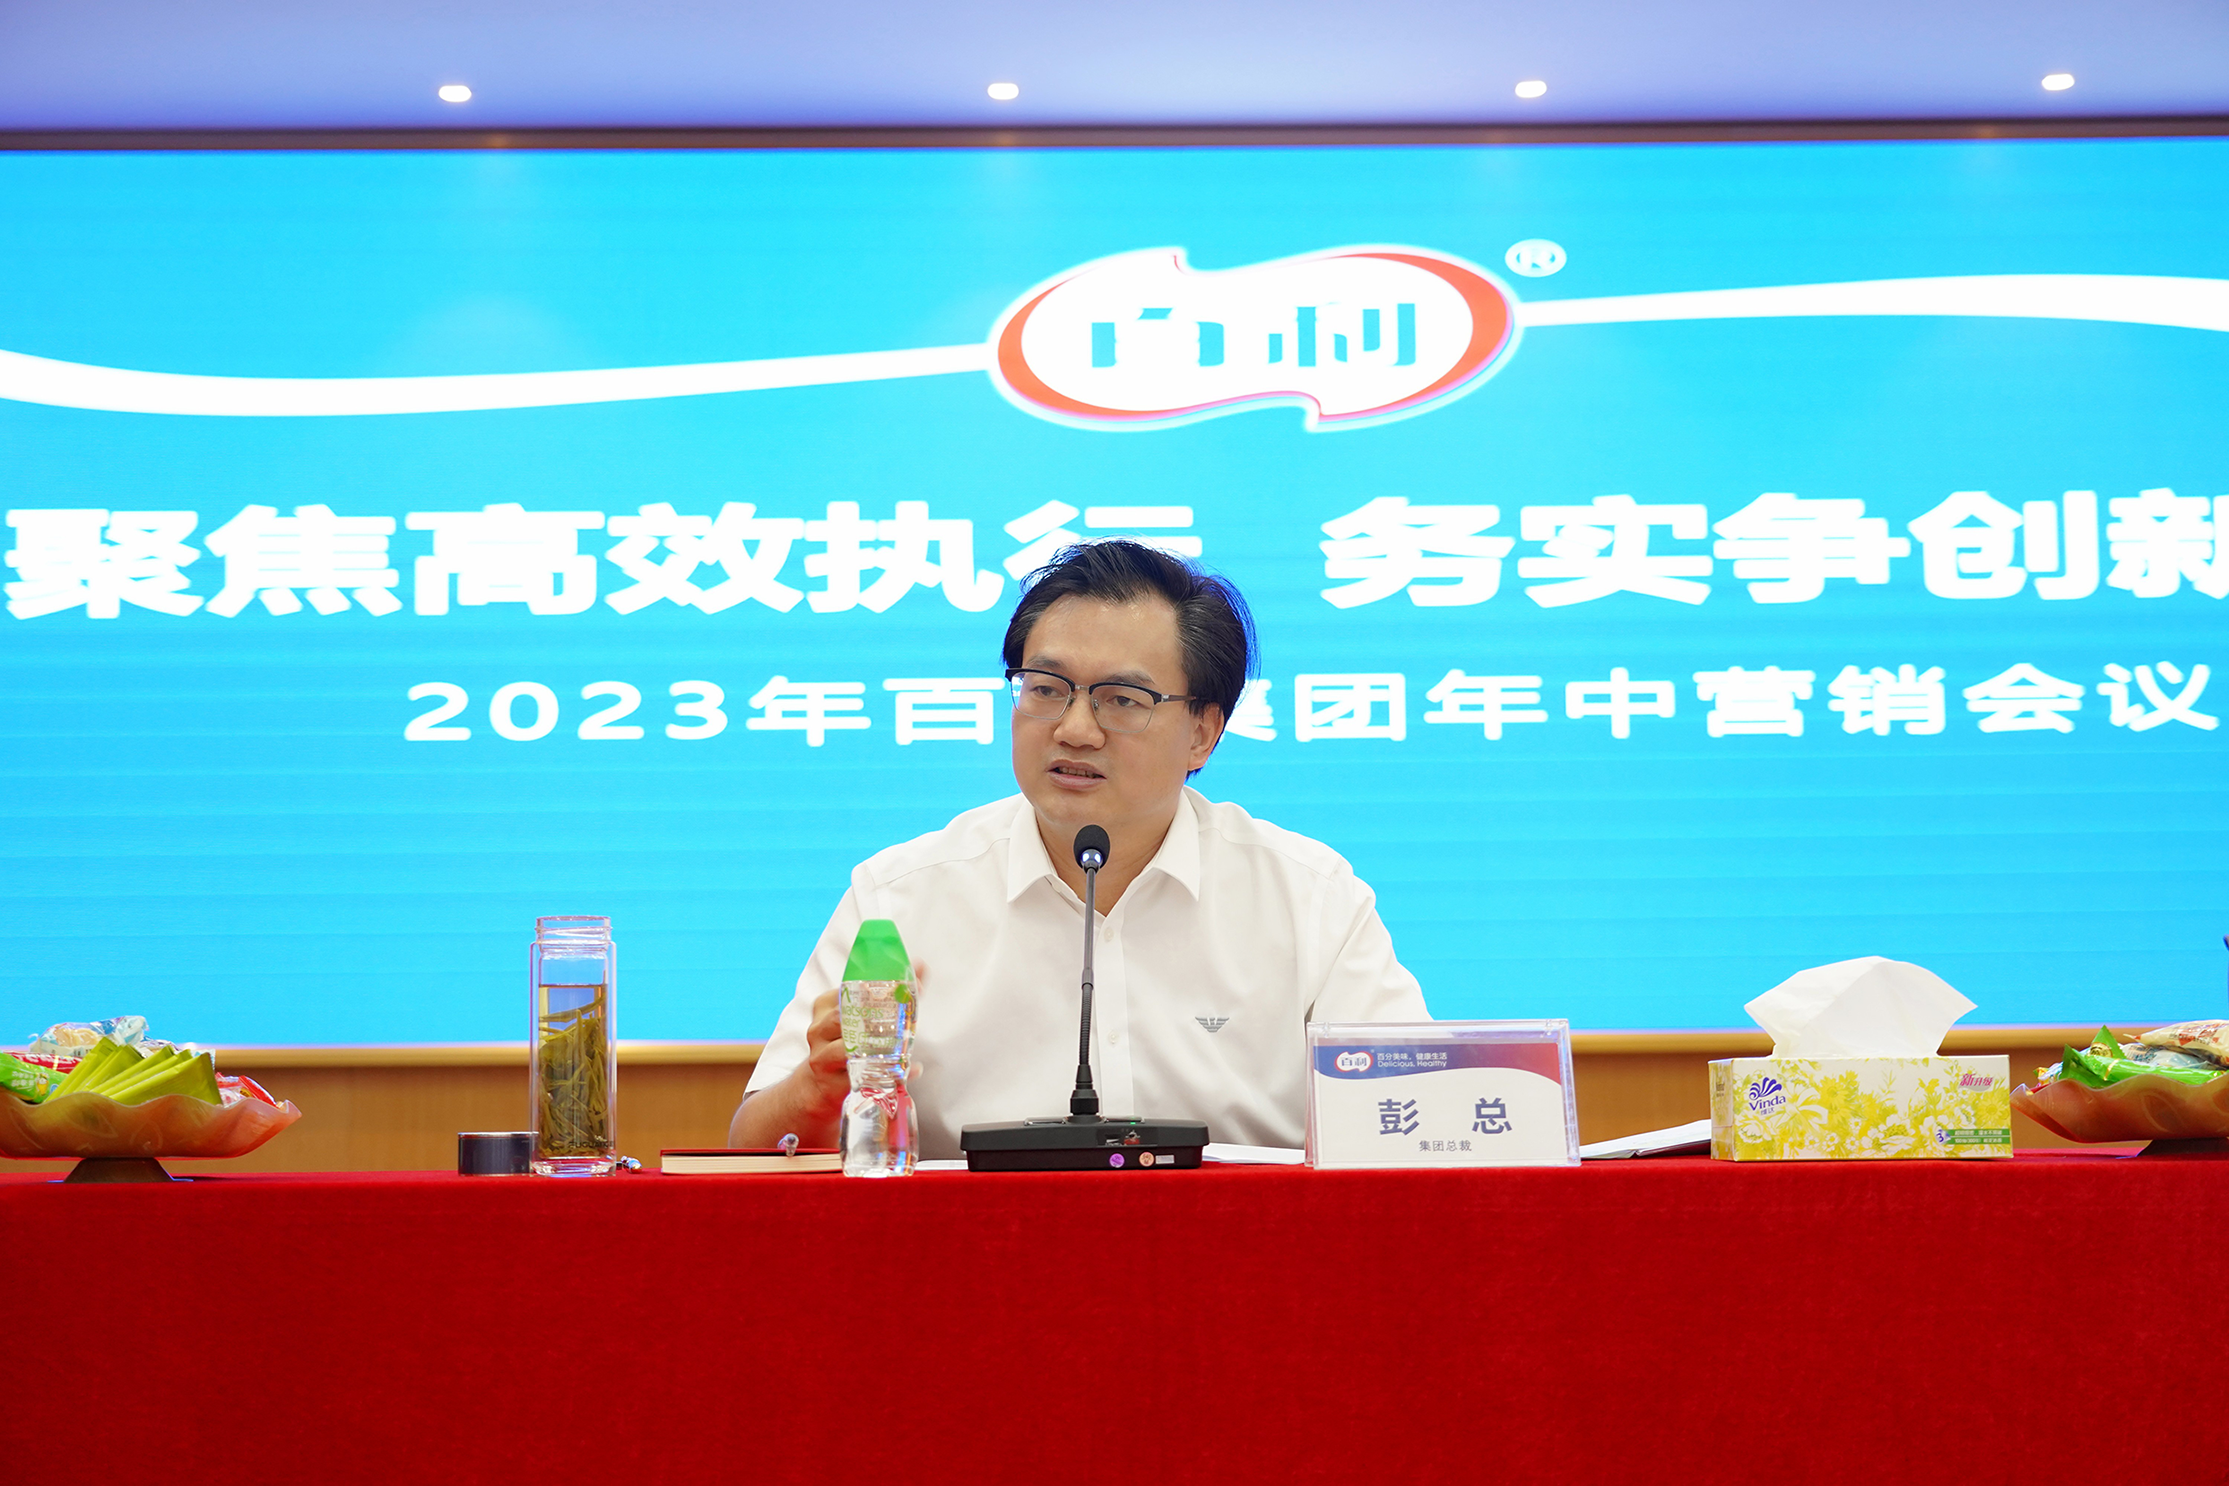 “聚焦高效执行 务实争创新高” | 彭阳县集团2023年中营销会议成功召开